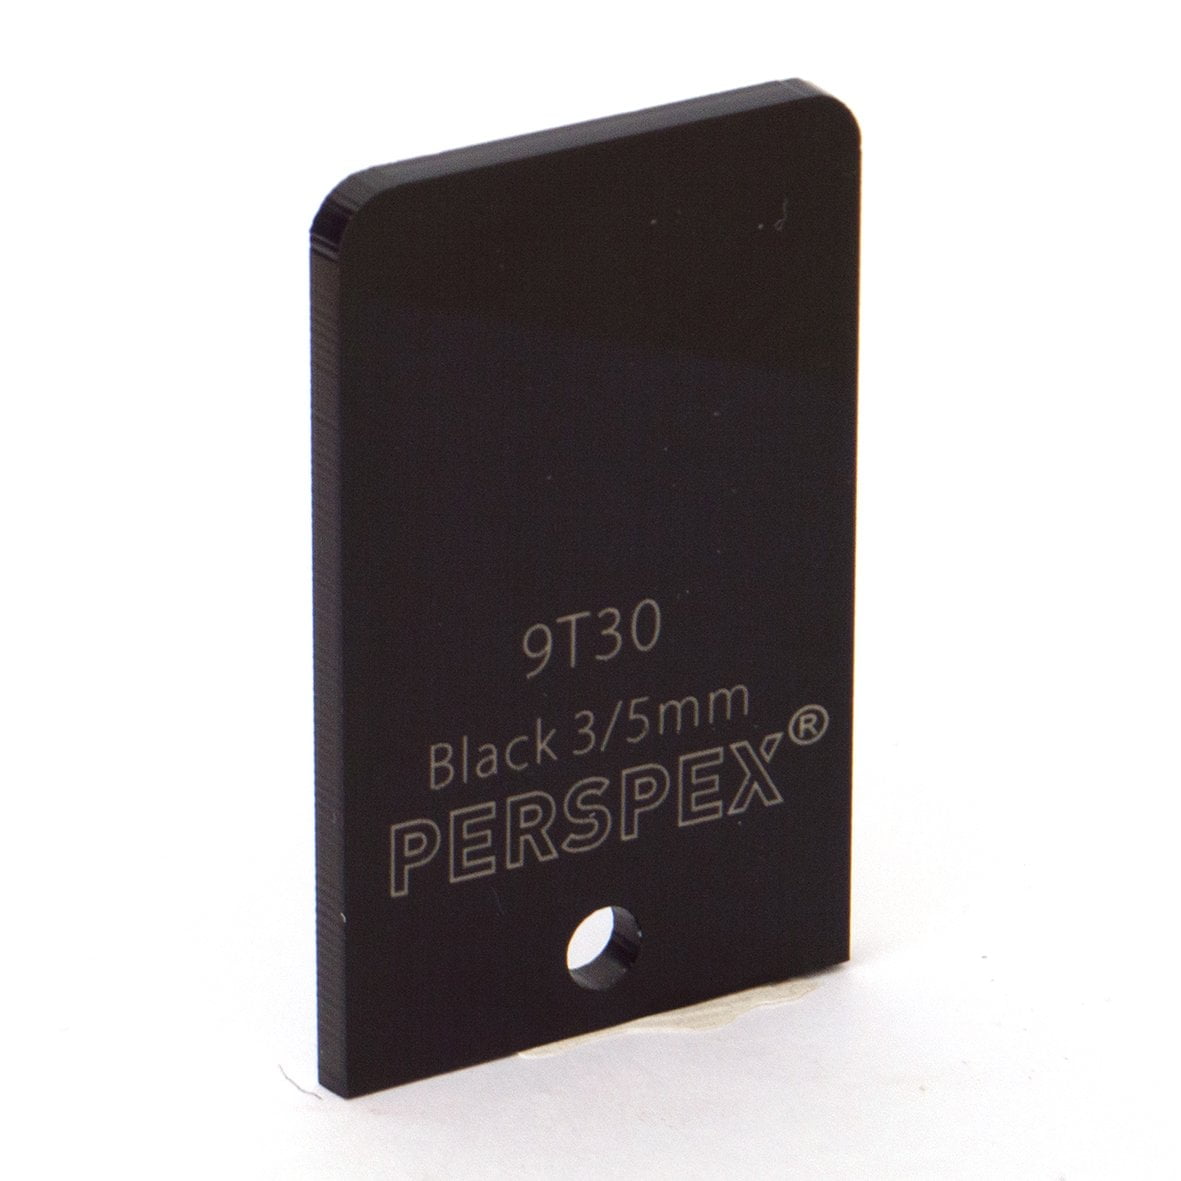 5mm Standard Black 9T30, 1000x600mm